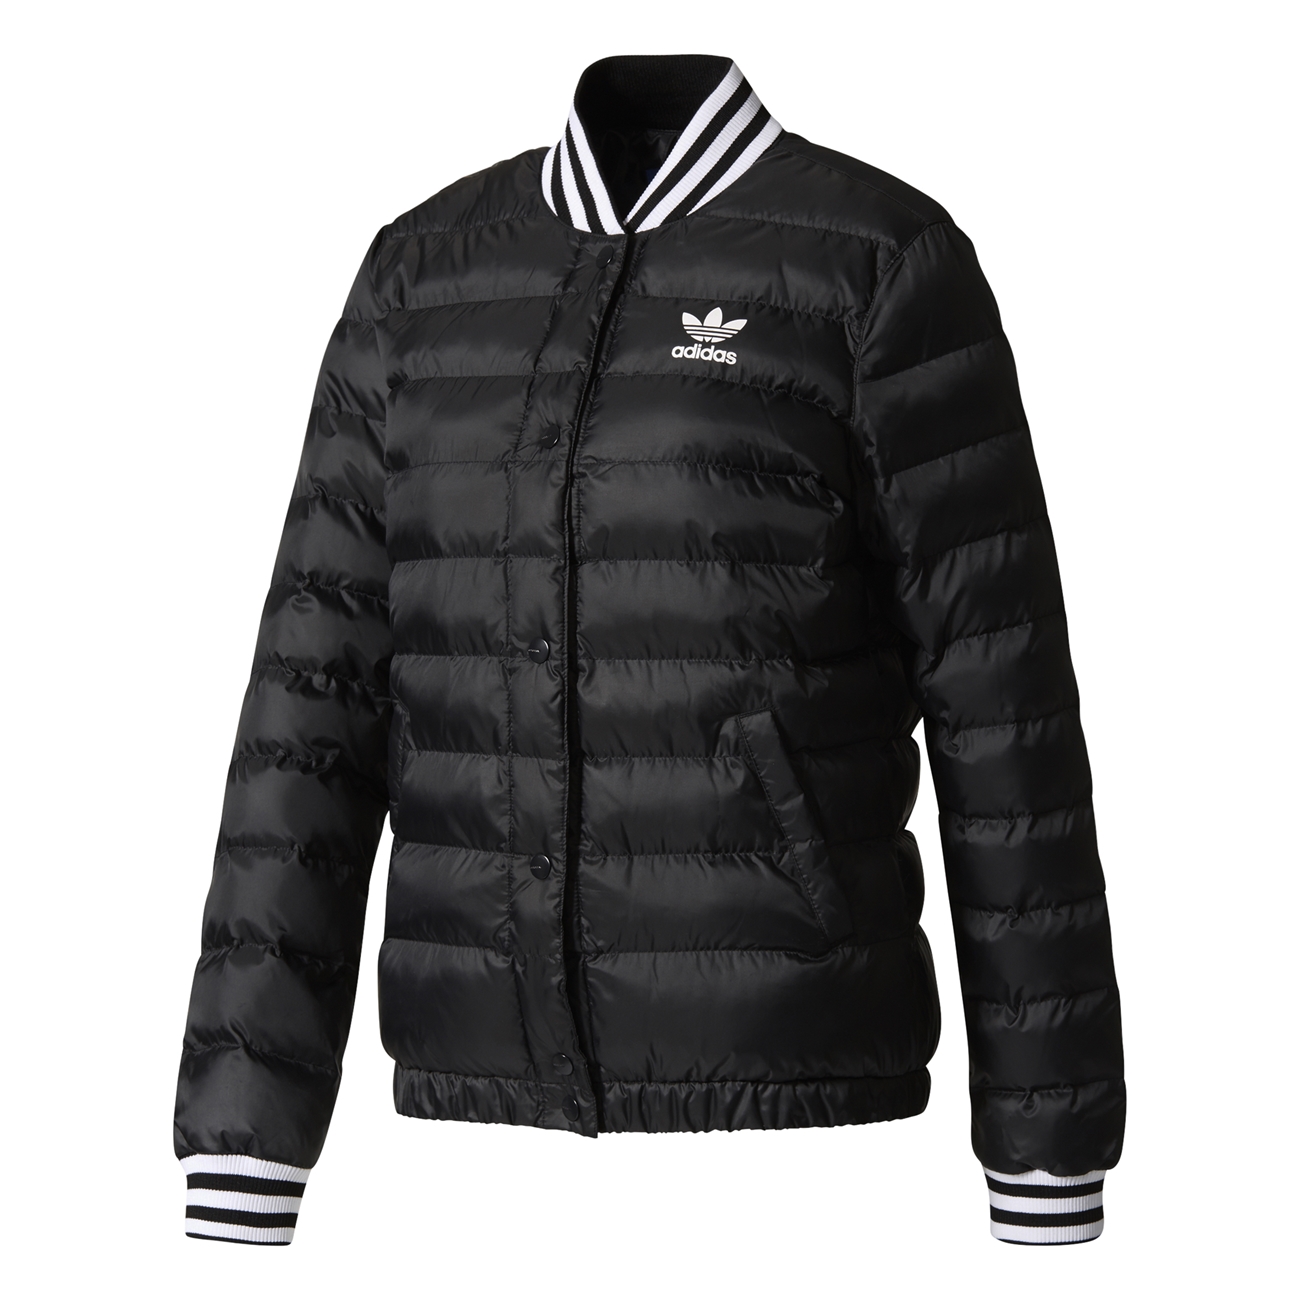 Adidas Originals Collegiate Jacket (black)